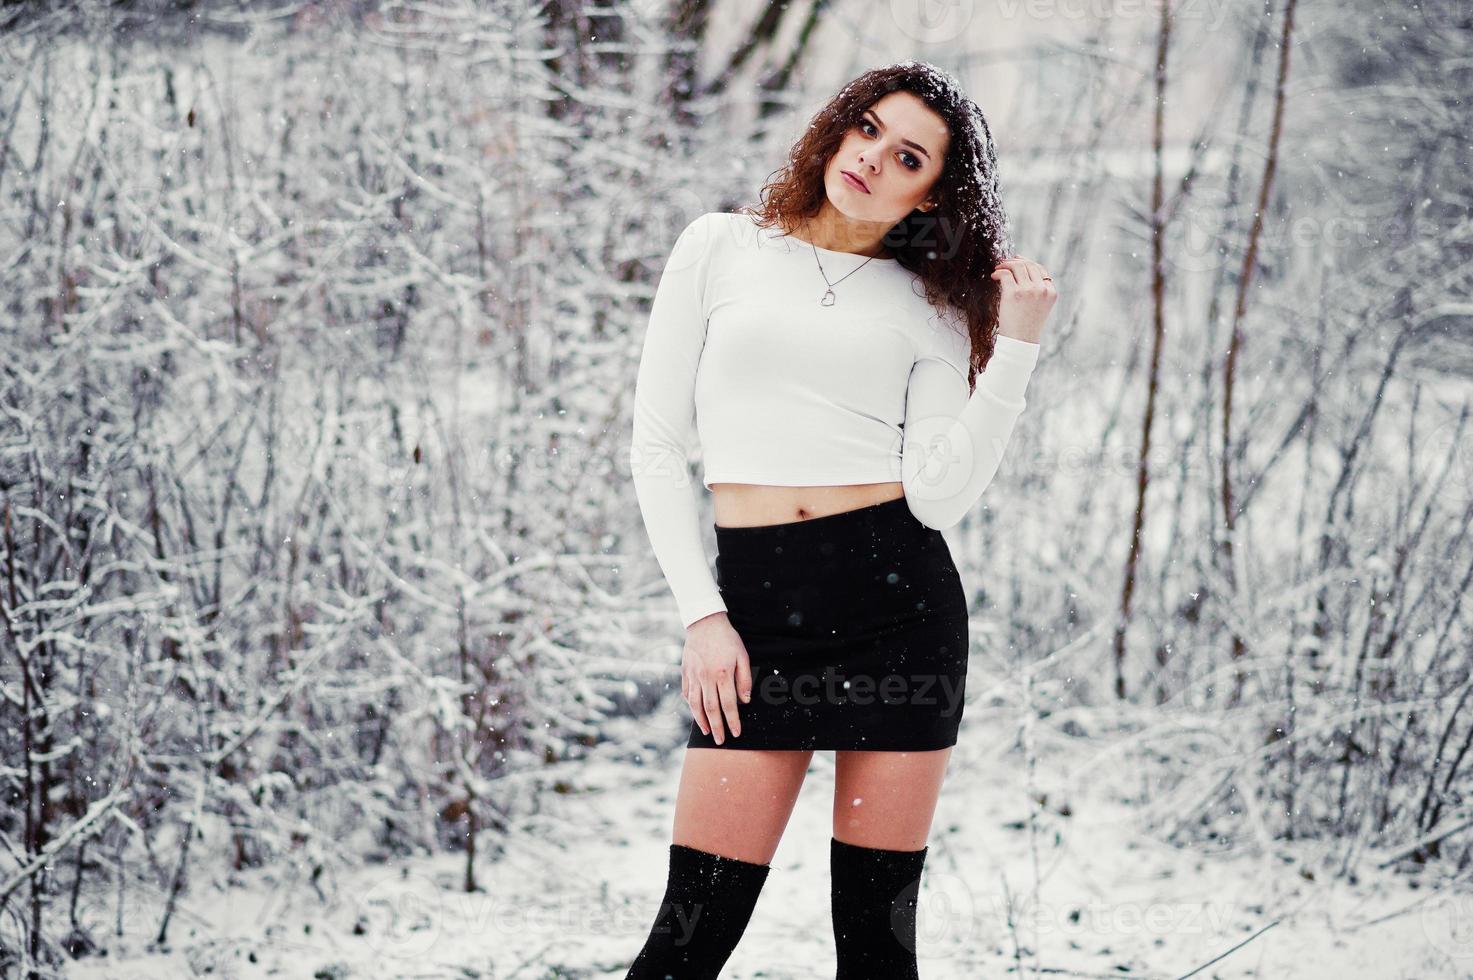 fond de fille brune bouclée chute de neige, usure sur mini jupe noire et bas de laine. modèle sur l'hiver. portrait de mode par temps neigeux. photo tonique instagram.